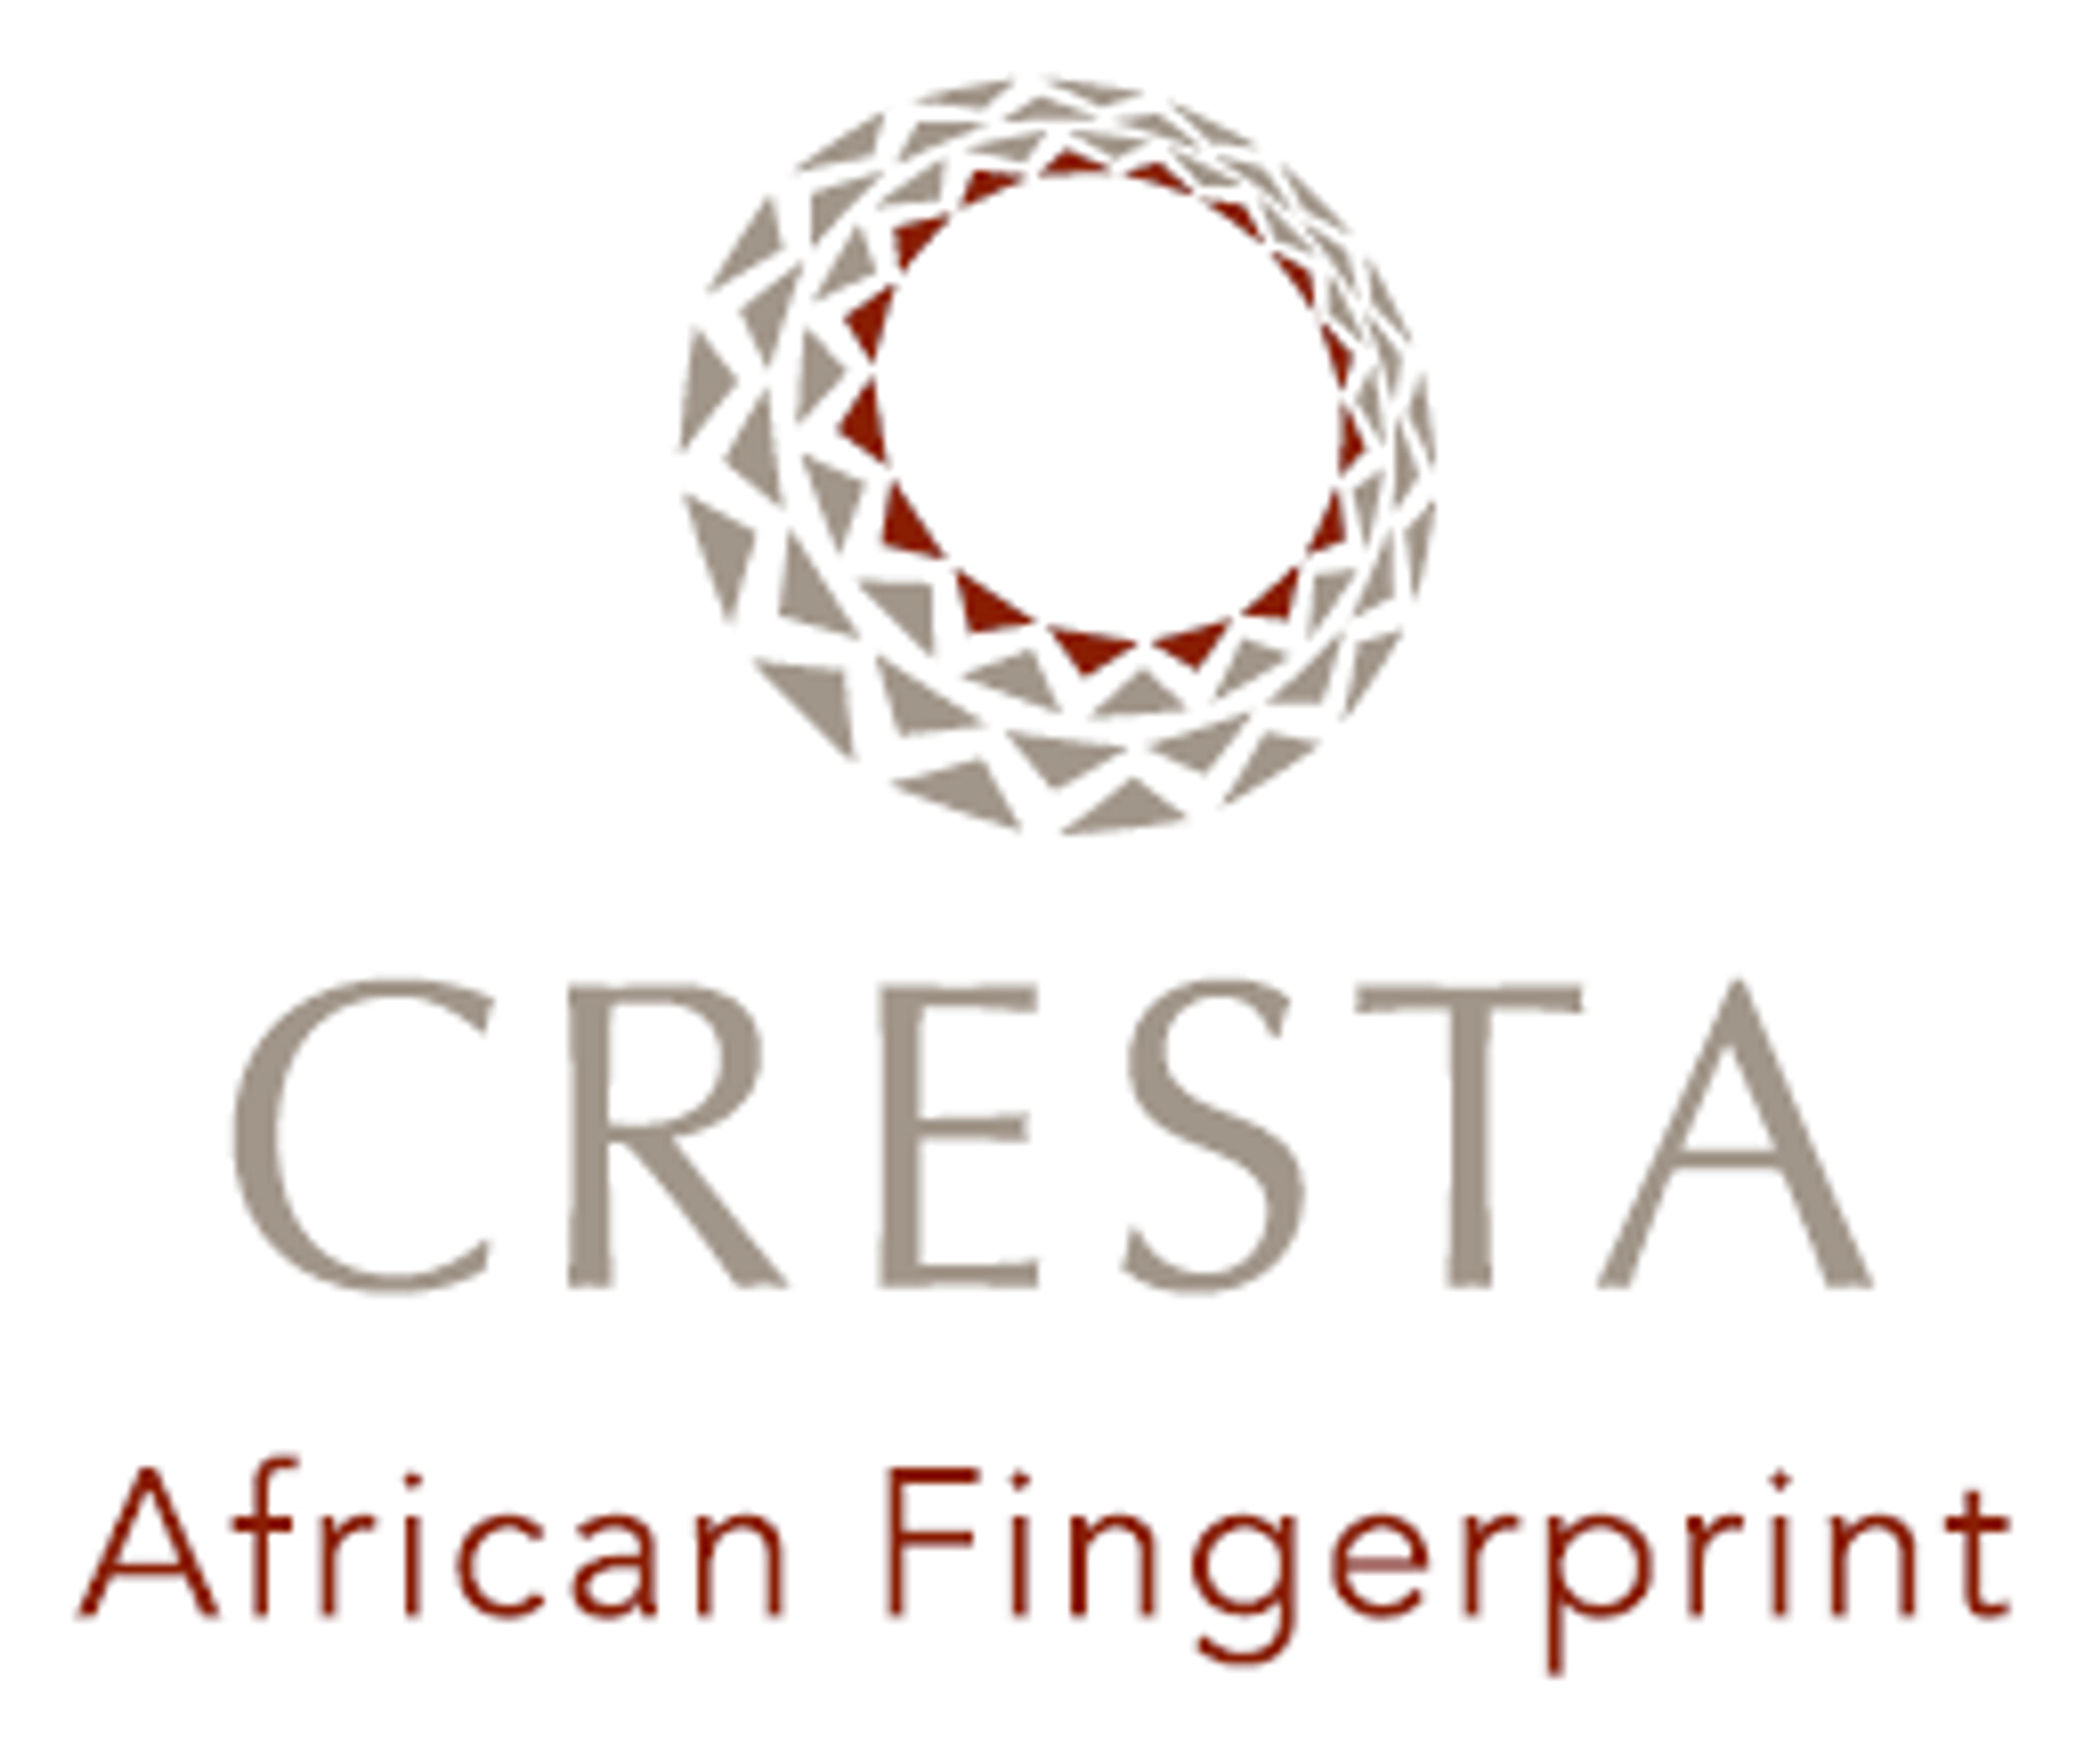 Cresta Gateway Logos African Fingerprint